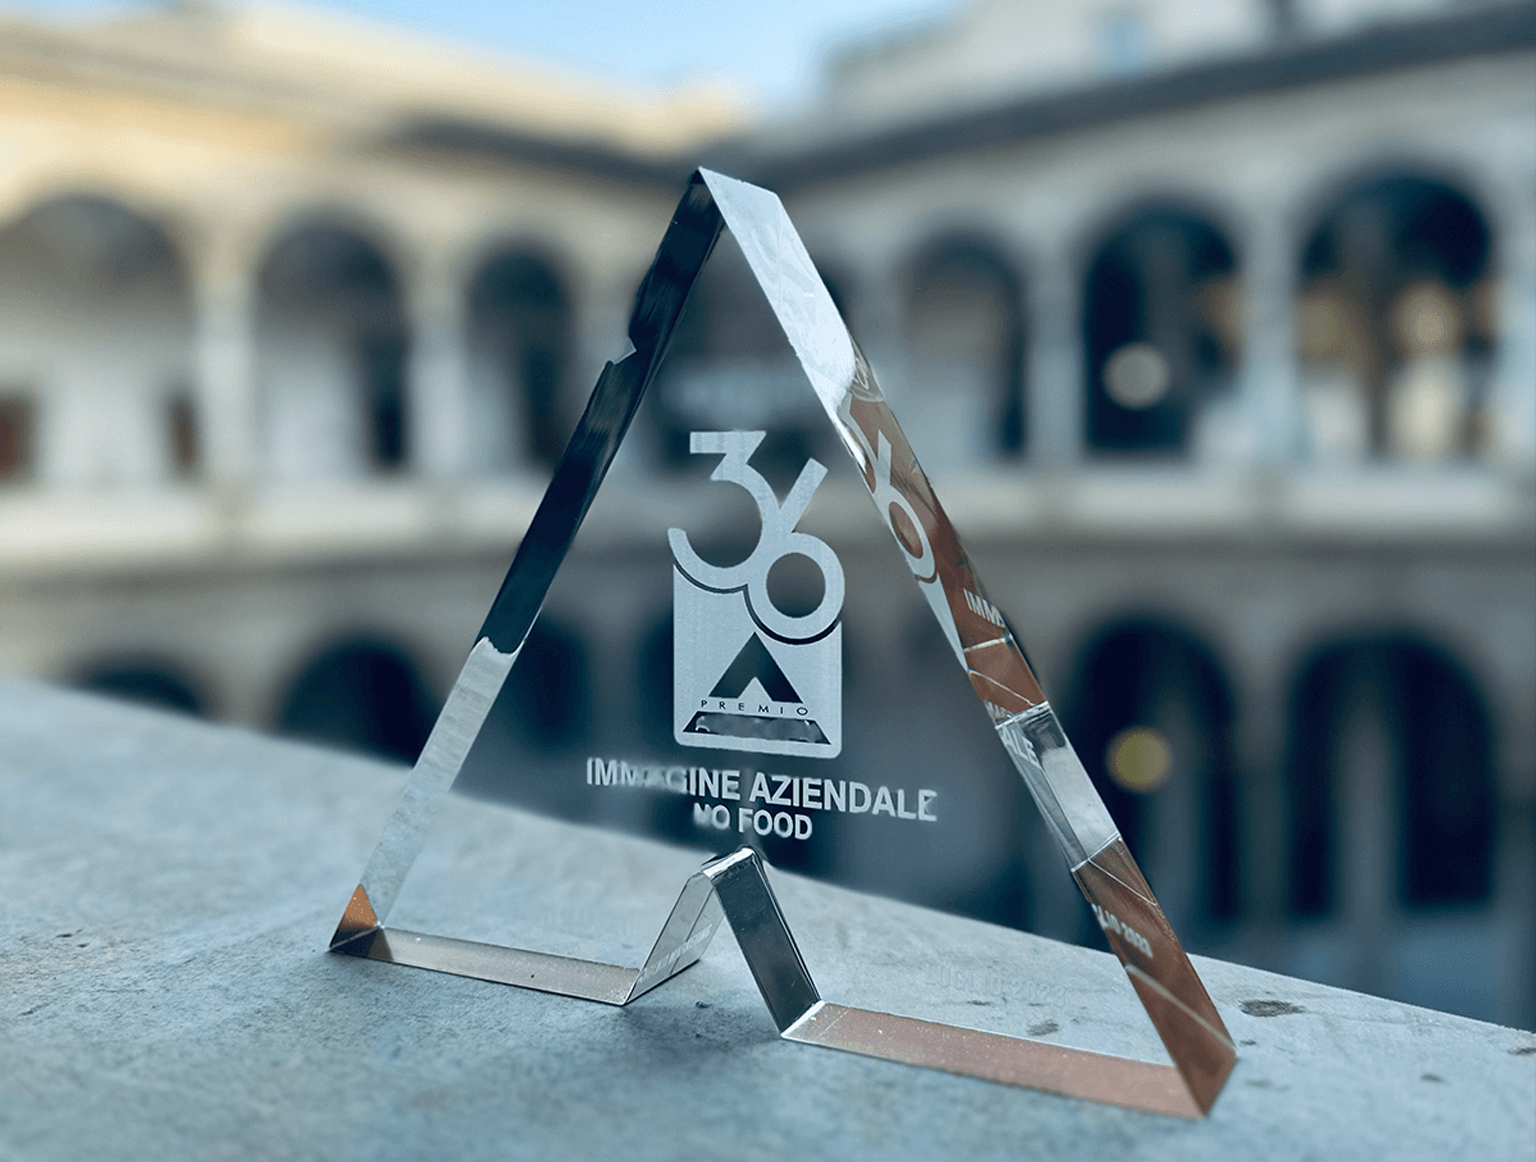 Tunnel Studios trionfa ancora, questa volta alla XXXVI edizione del premio Agorà con il progetto di Brand Identity per Rizzoli!